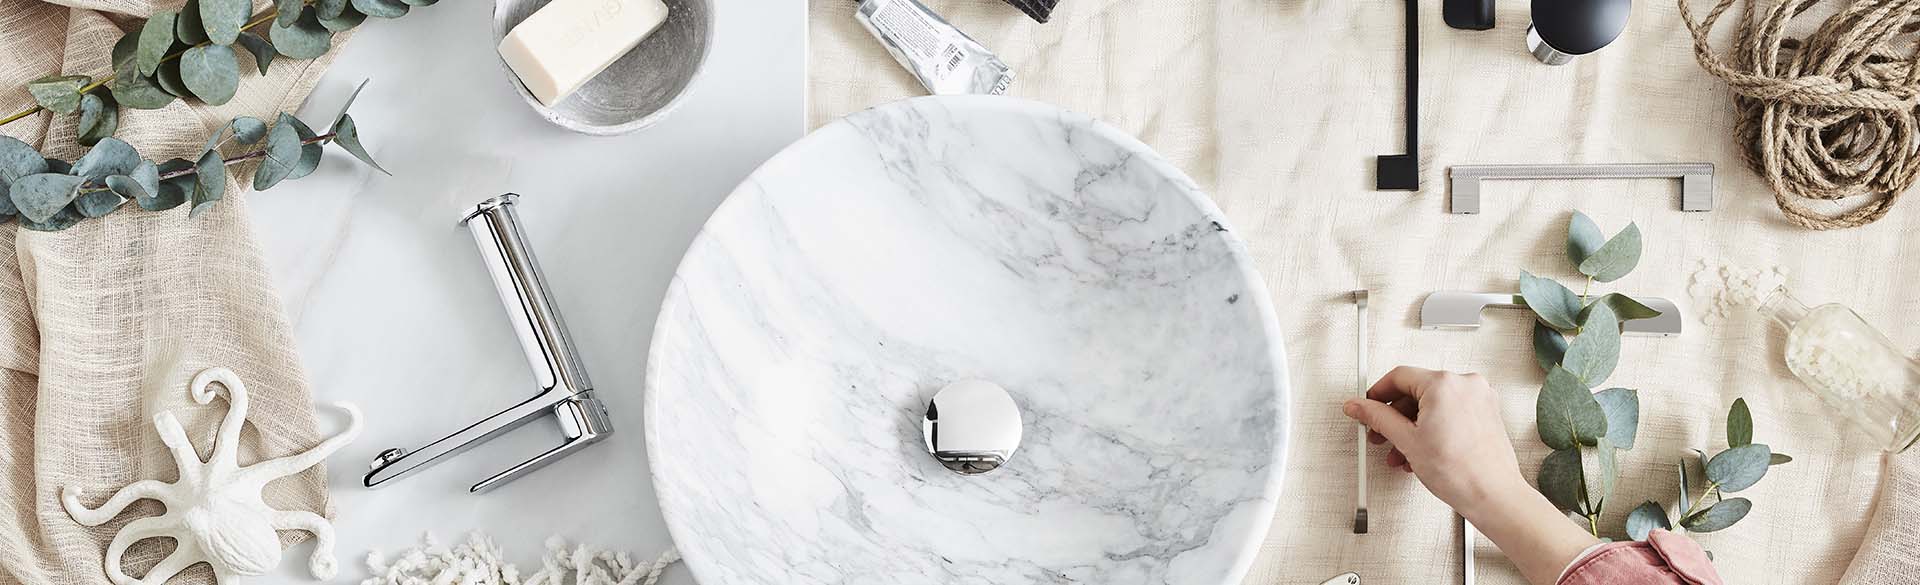 noro-marble-icon-handvask